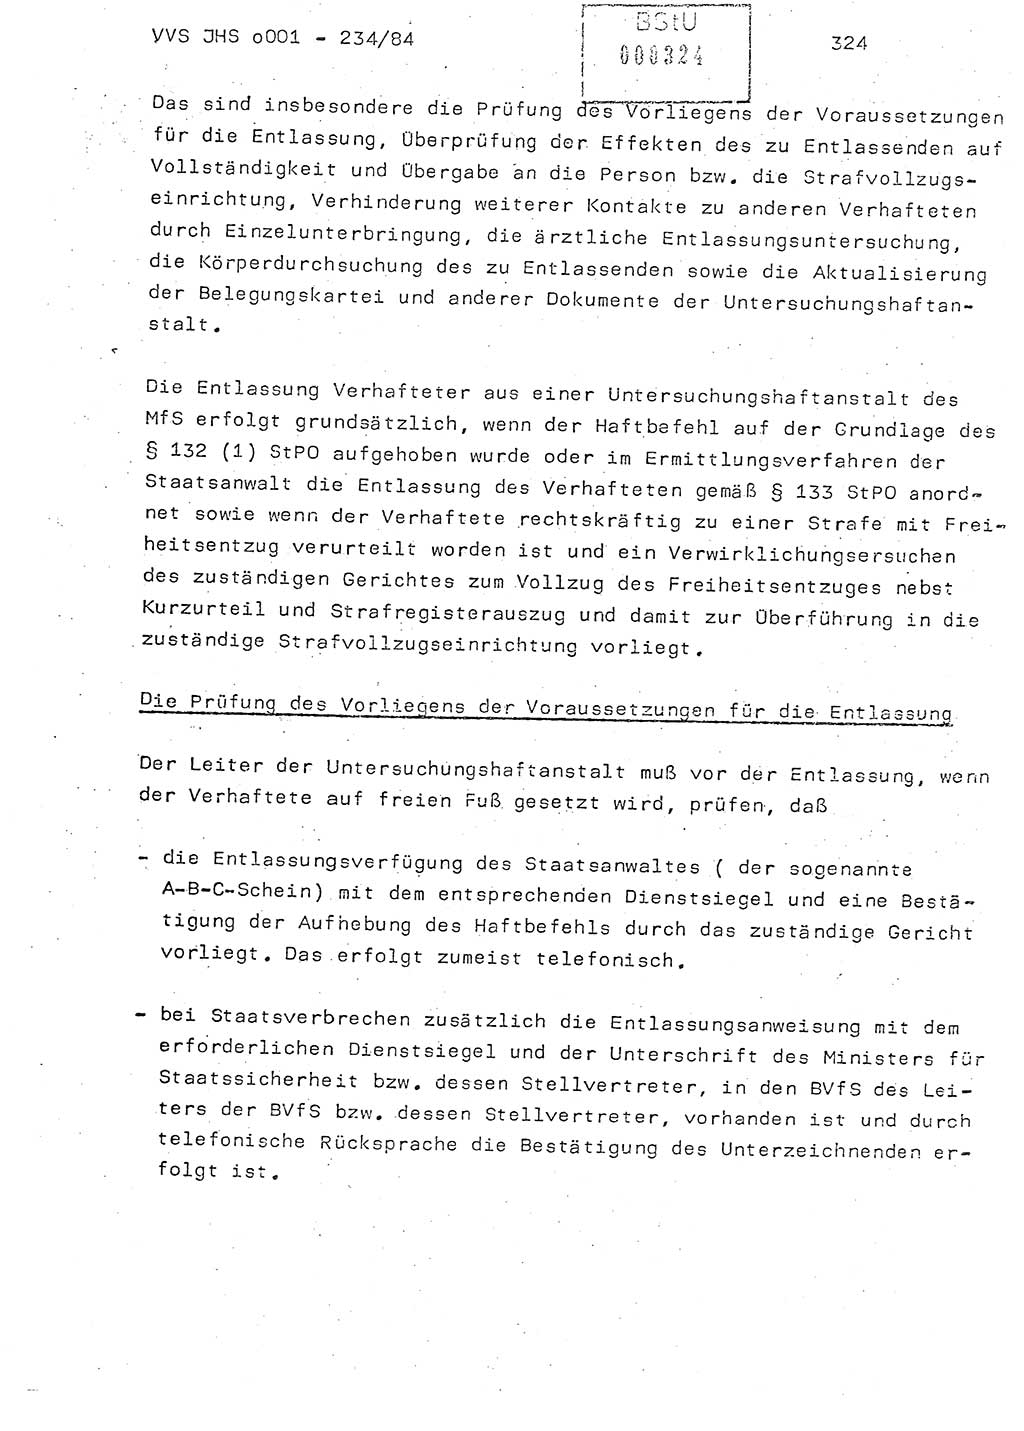 Dissertation Oberst Siegfried Rataizick (Abt. ⅩⅣ), Oberstleutnant Volkmar Heinz (Abt. ⅩⅣ), Oberstleutnant Werner Stein (HA Ⅸ), Hauptmann Heinz Conrad (JHS), Ministerium für Staatssicherheit (MfS) [Deutsche Demokratische Republik (DDR)], Juristische Hochschule (JHS), Vertrauliche Verschlußsache (VVS) o001-234/84, Potsdam 1984, Seite 324 (Diss. MfS DDR JHS VVS o001-234/84 1984, S. 324)